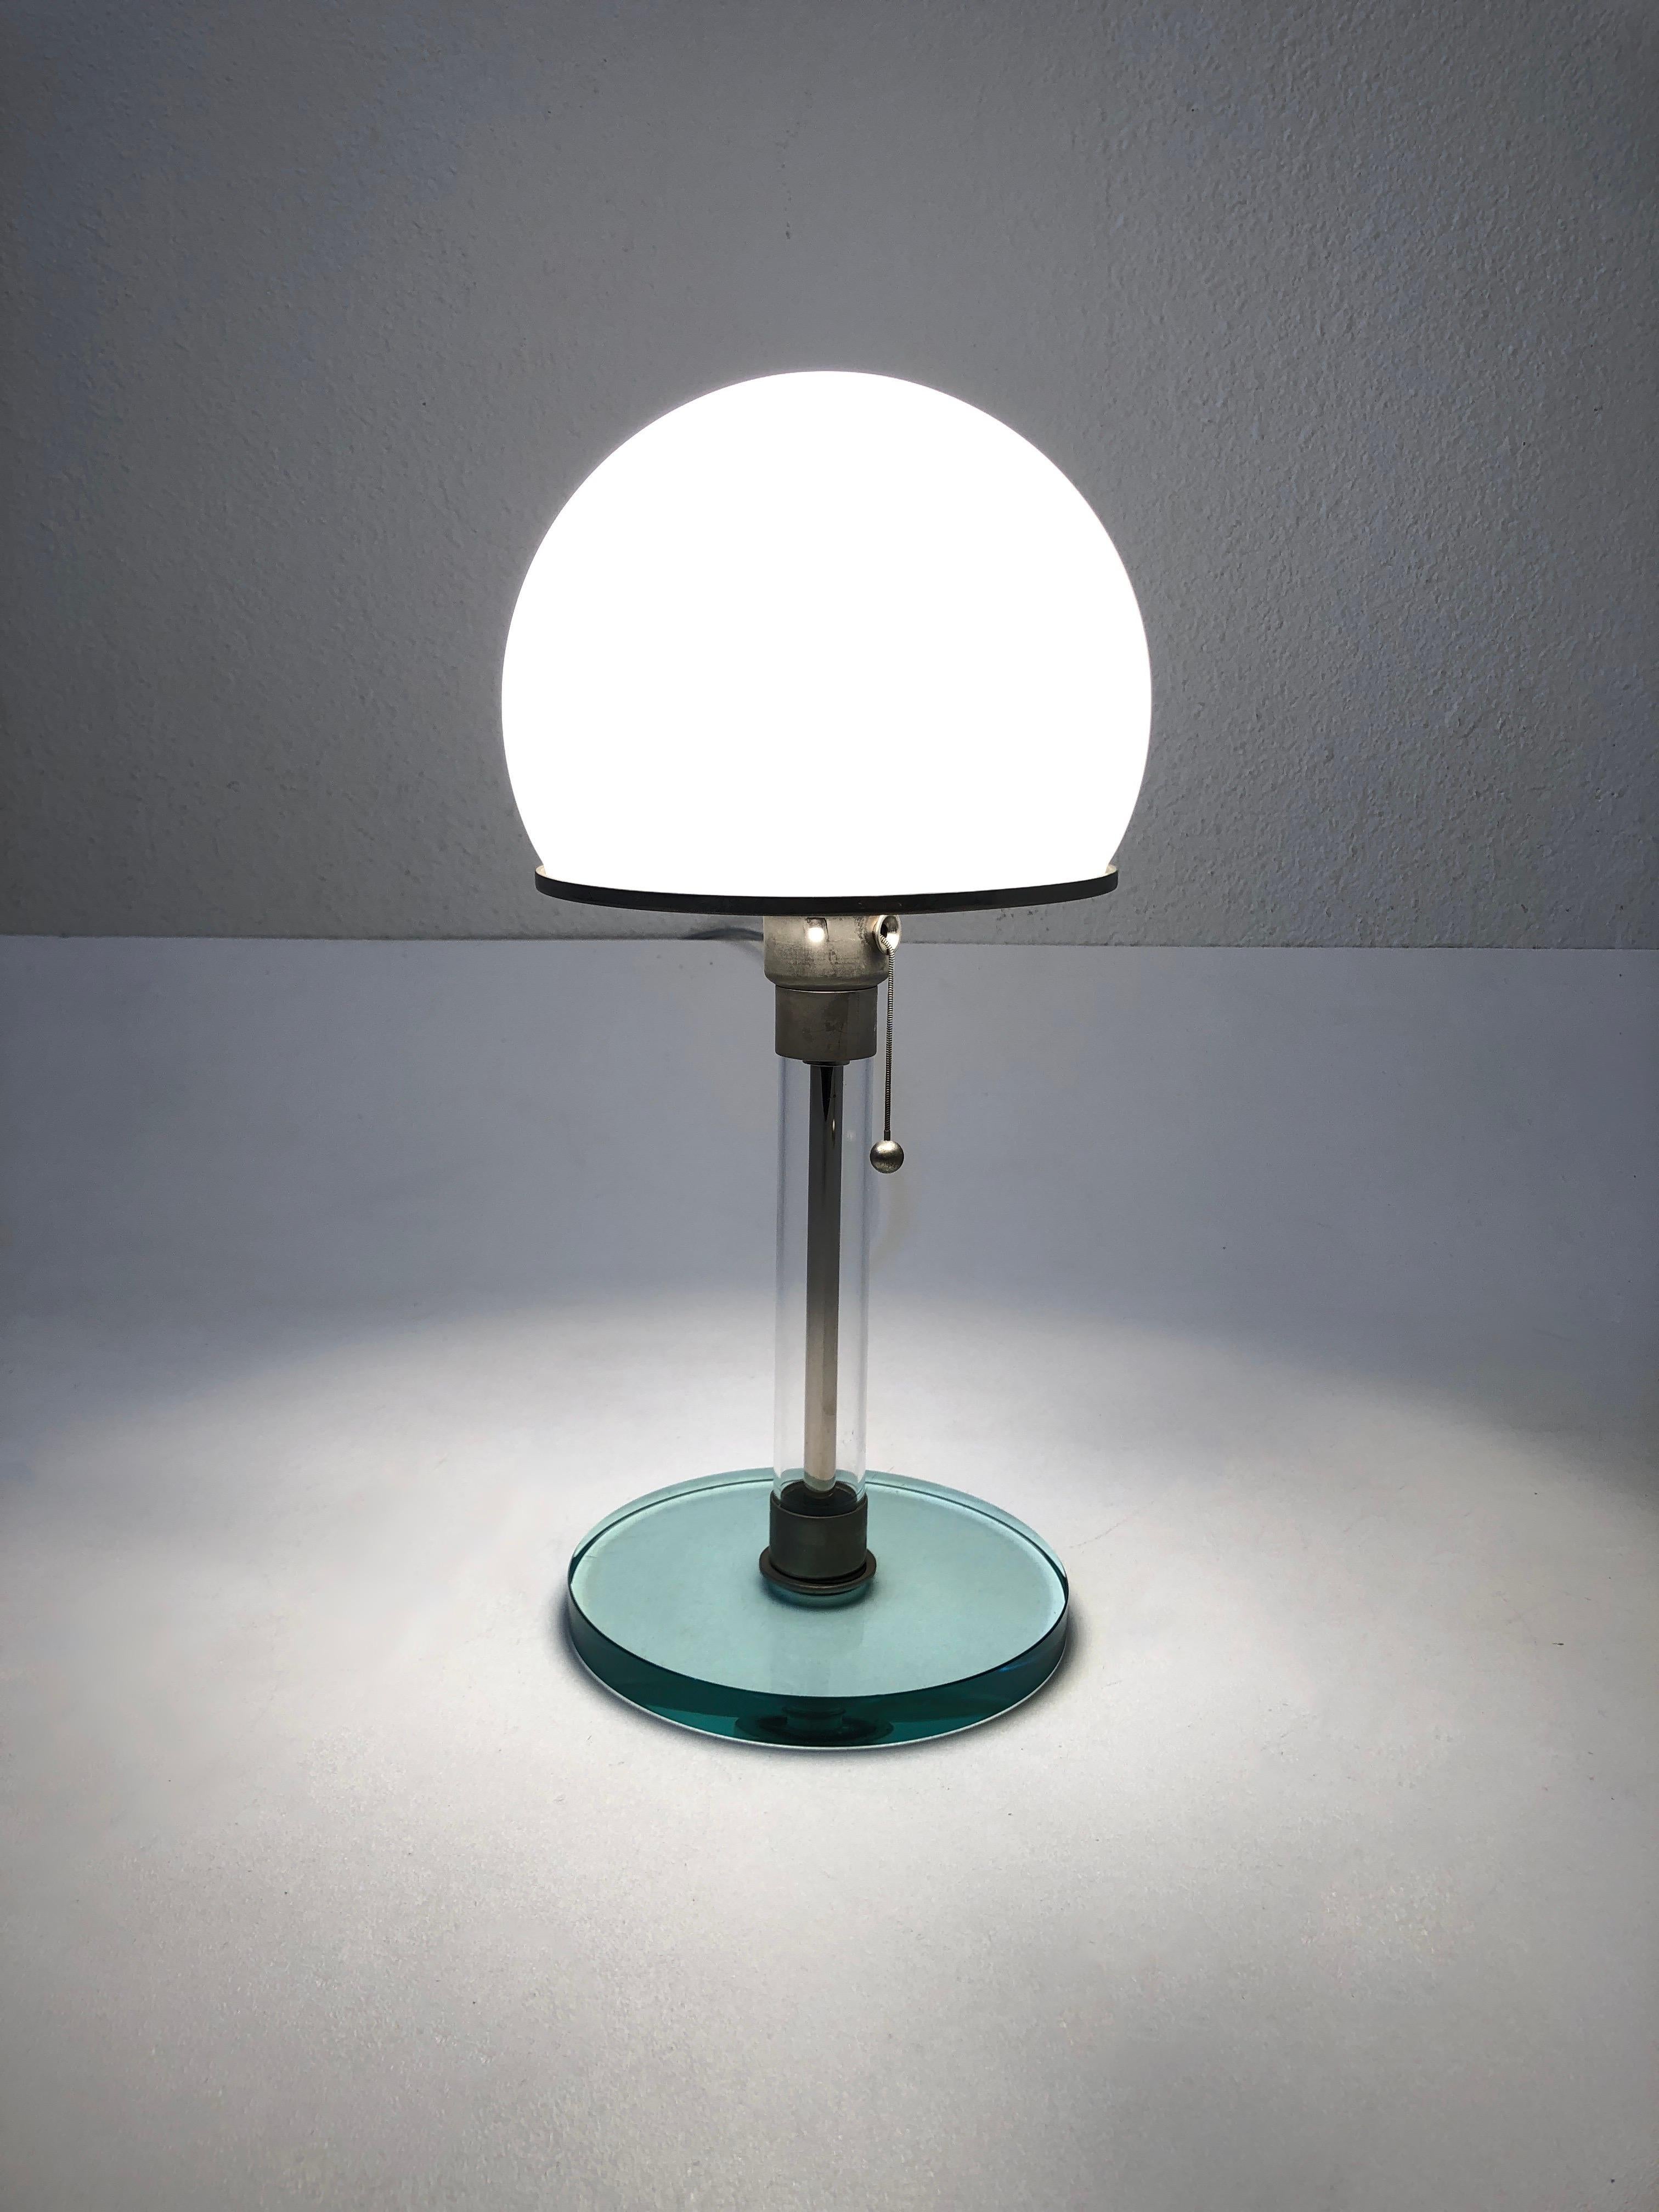 Lampe de table allemande en chrome et verre Bauhaus conçue par Wilhelm Wagenfeld pour Tecnolume dans les années 1920. 
Récemment recâblée pour l'Amérique, elle fonctionne avec une ampoule Edison ordinaire de 75w max. 
Quelques rayures sur la base